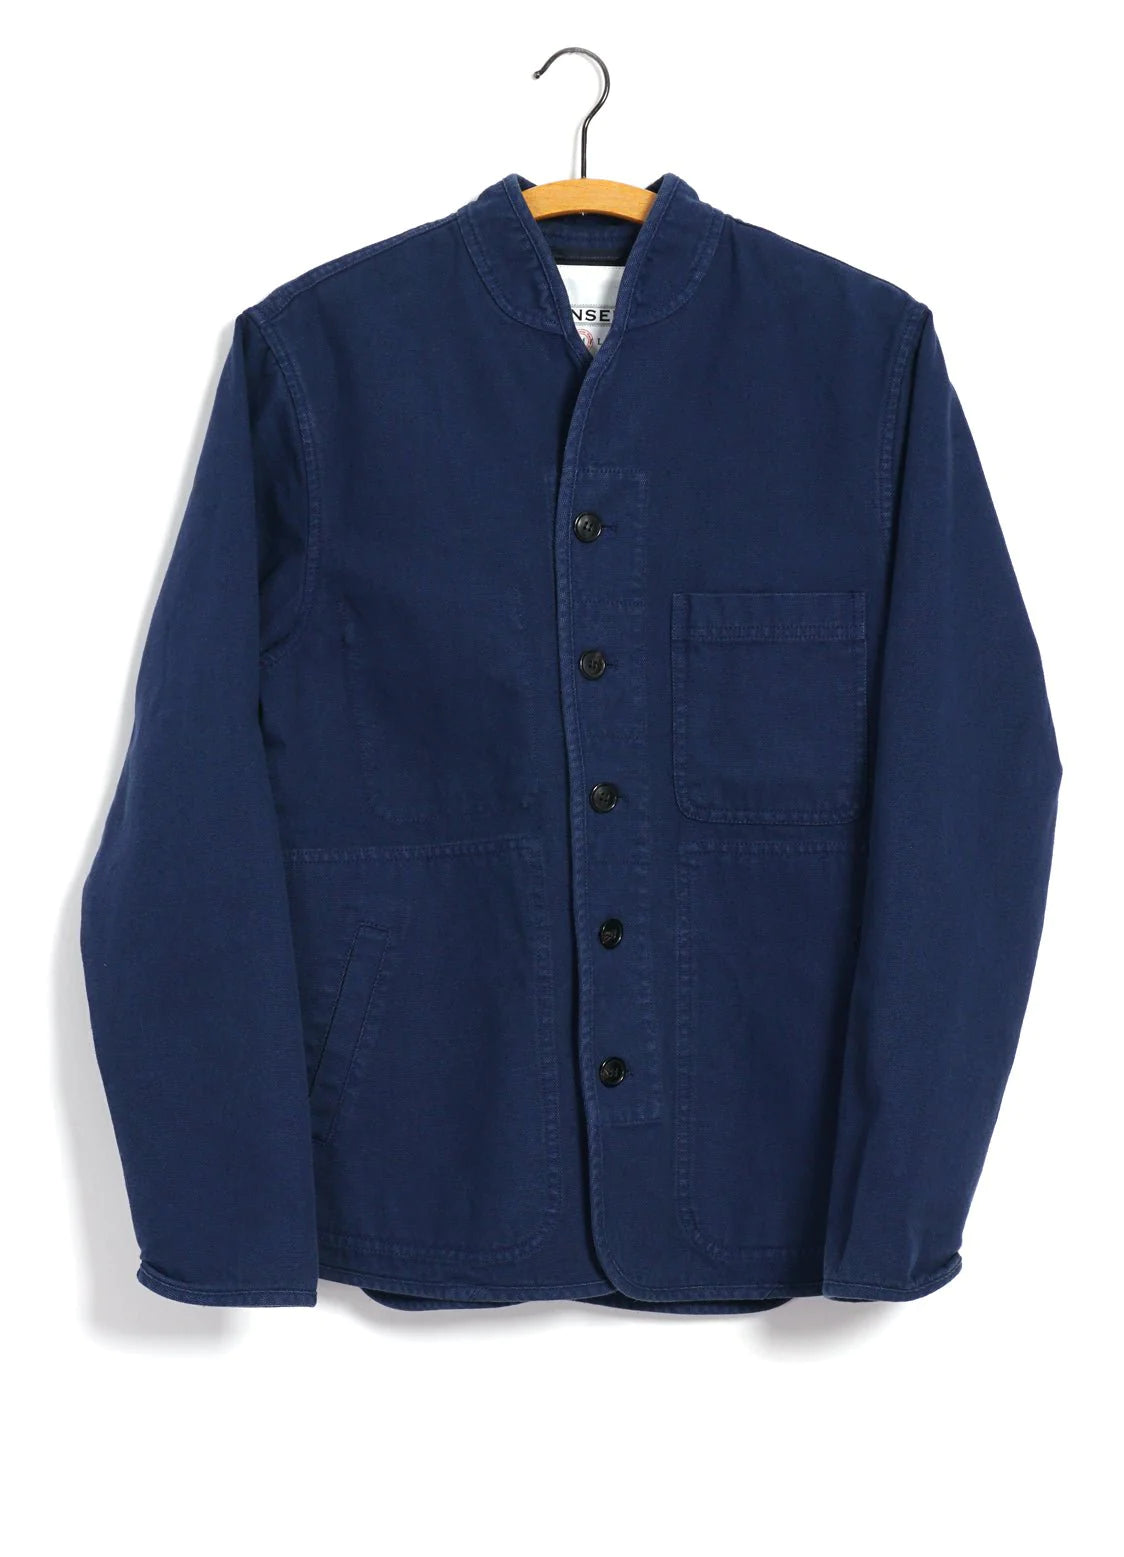 Hansen Garments Erling Canvas Work Jacket in blue